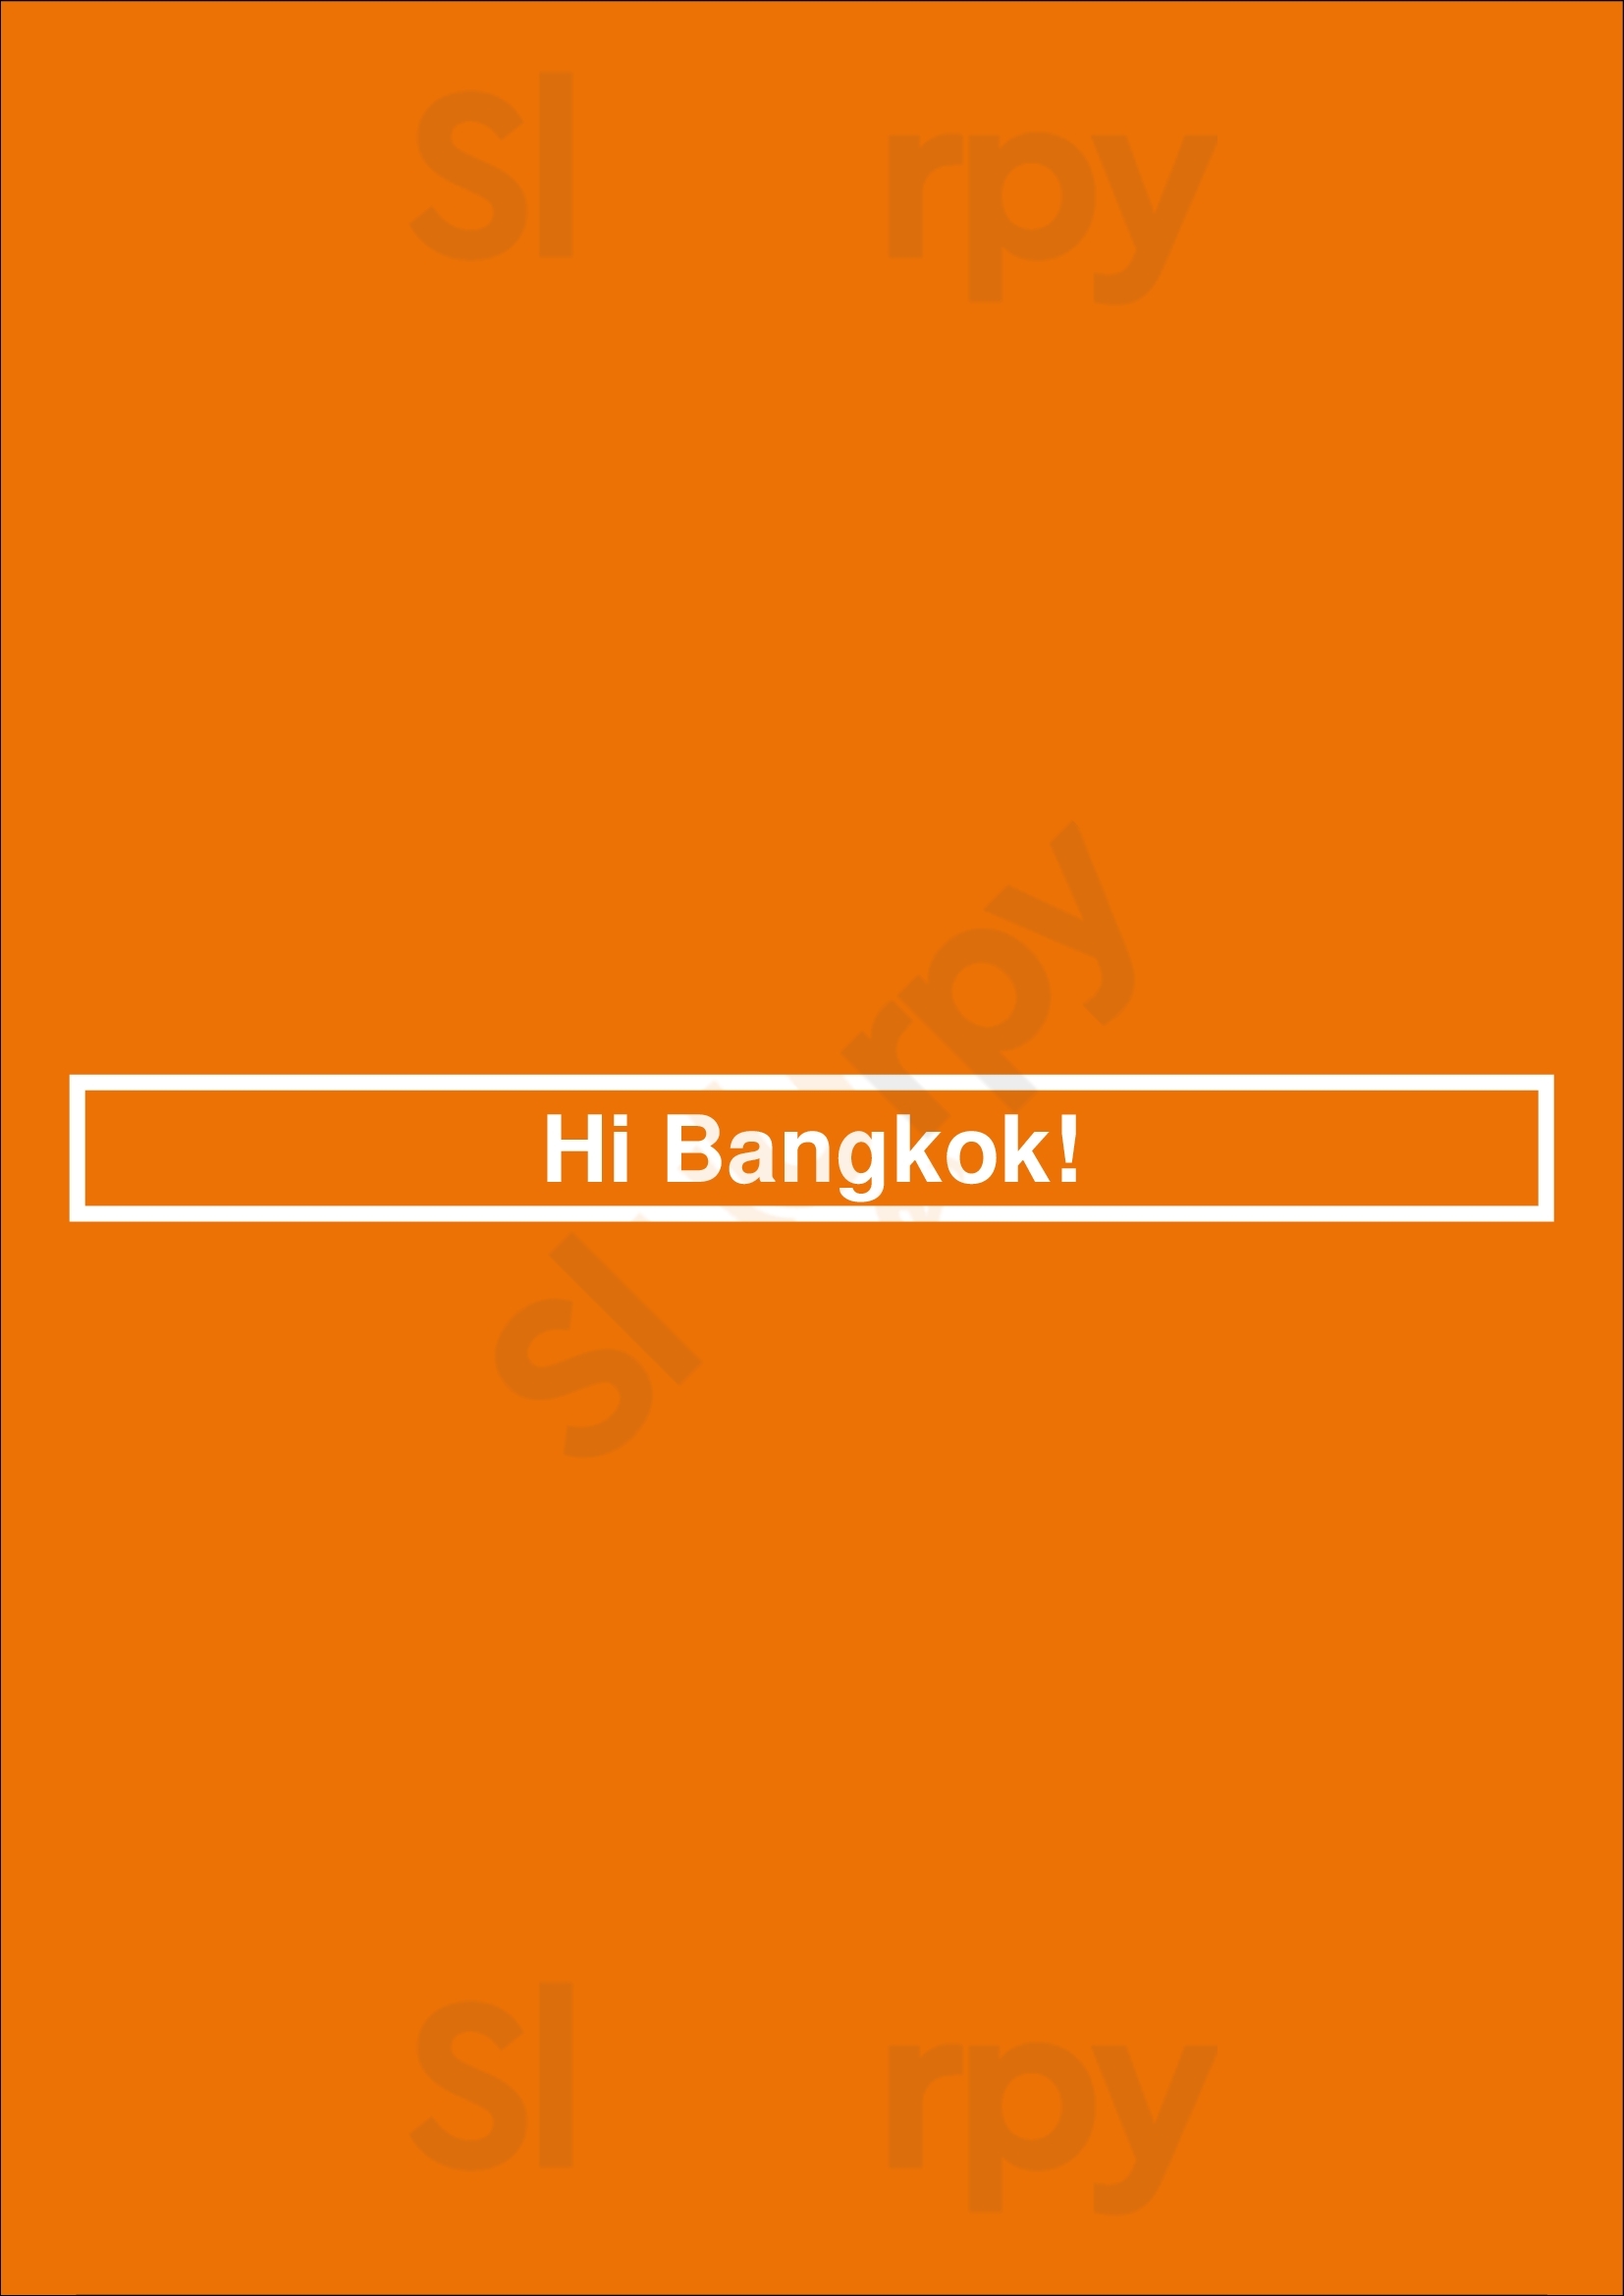 Hi Bangkok! London Menu - 1